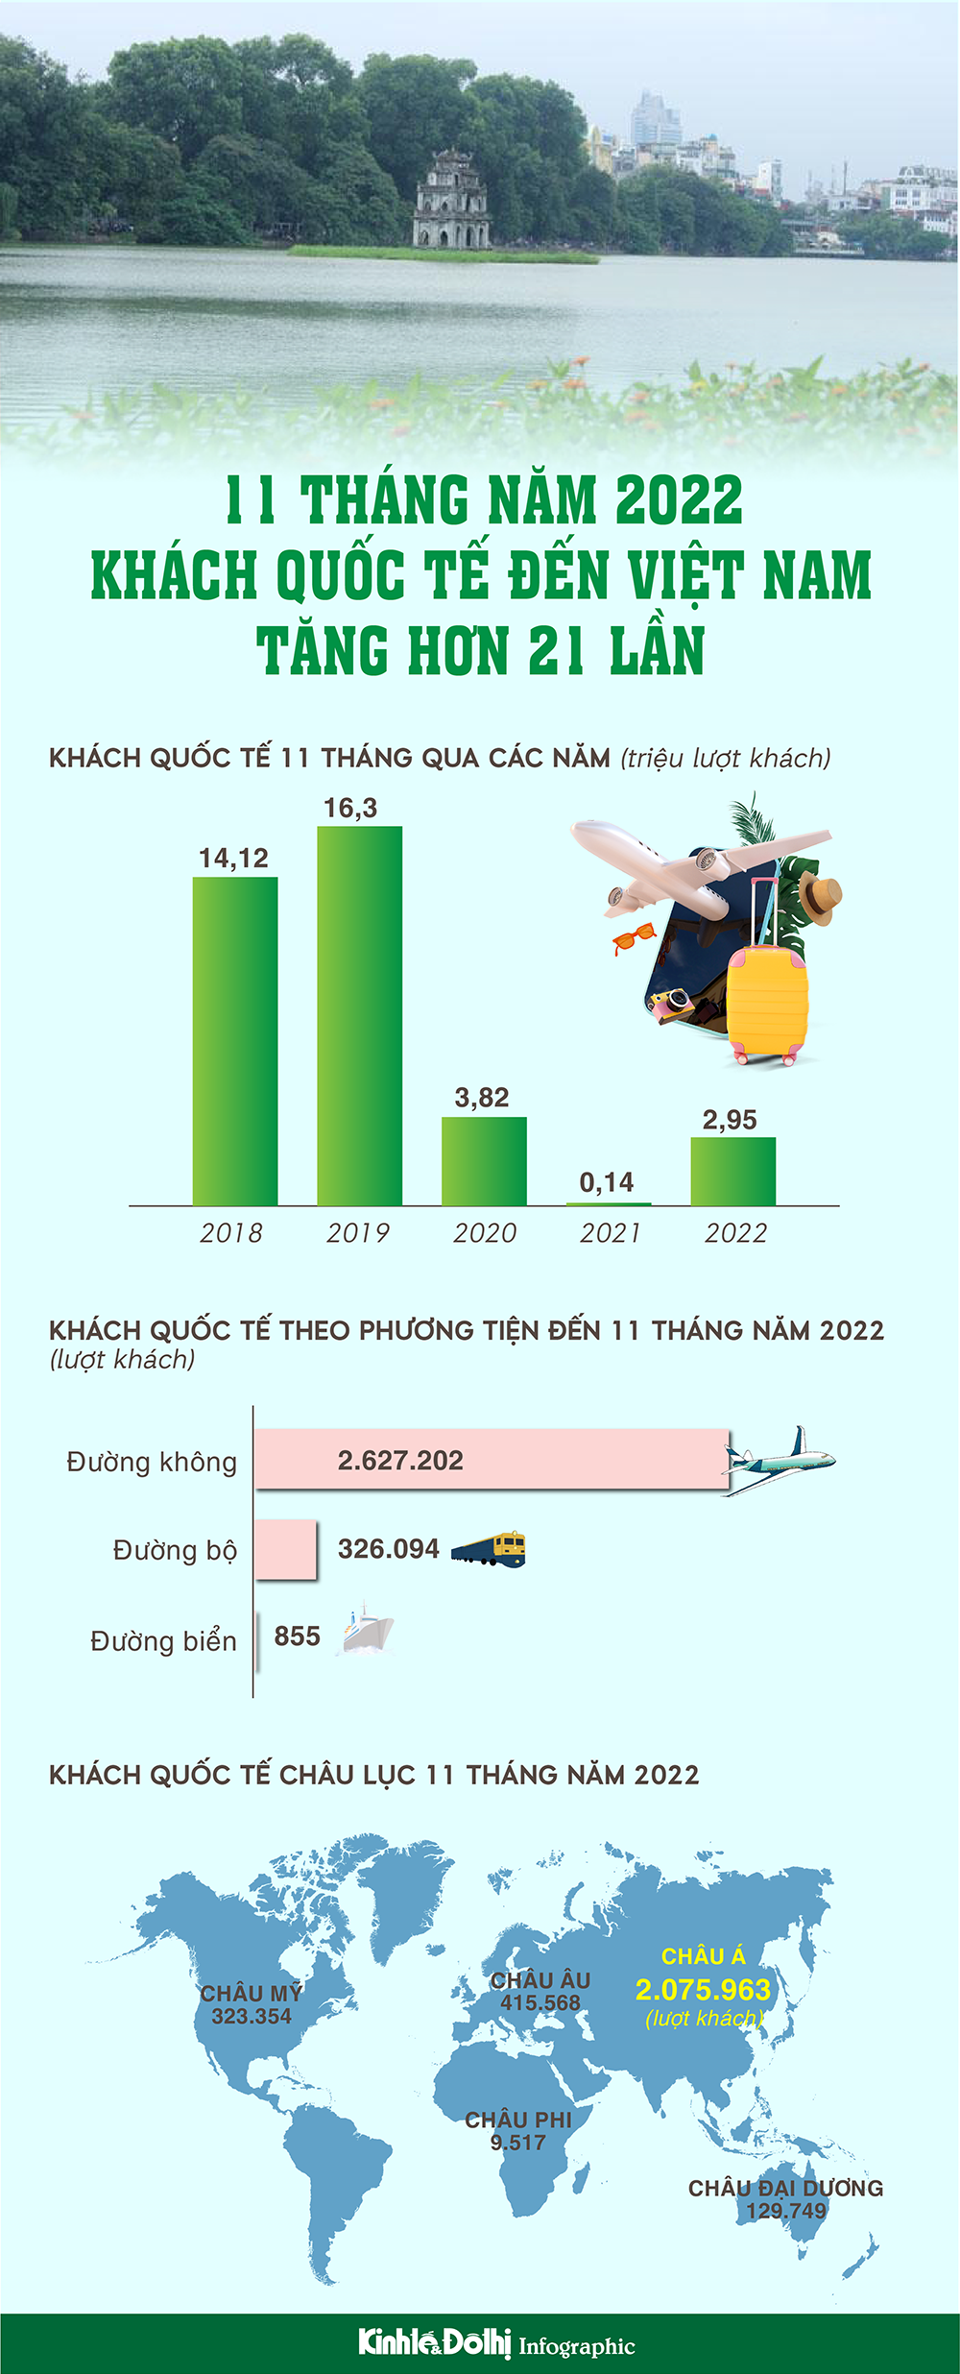 Trong 11 tháng, khách quốc tế đến Việt Nam đạt hơn 2,9 triệu lượt người - Ảnh 1